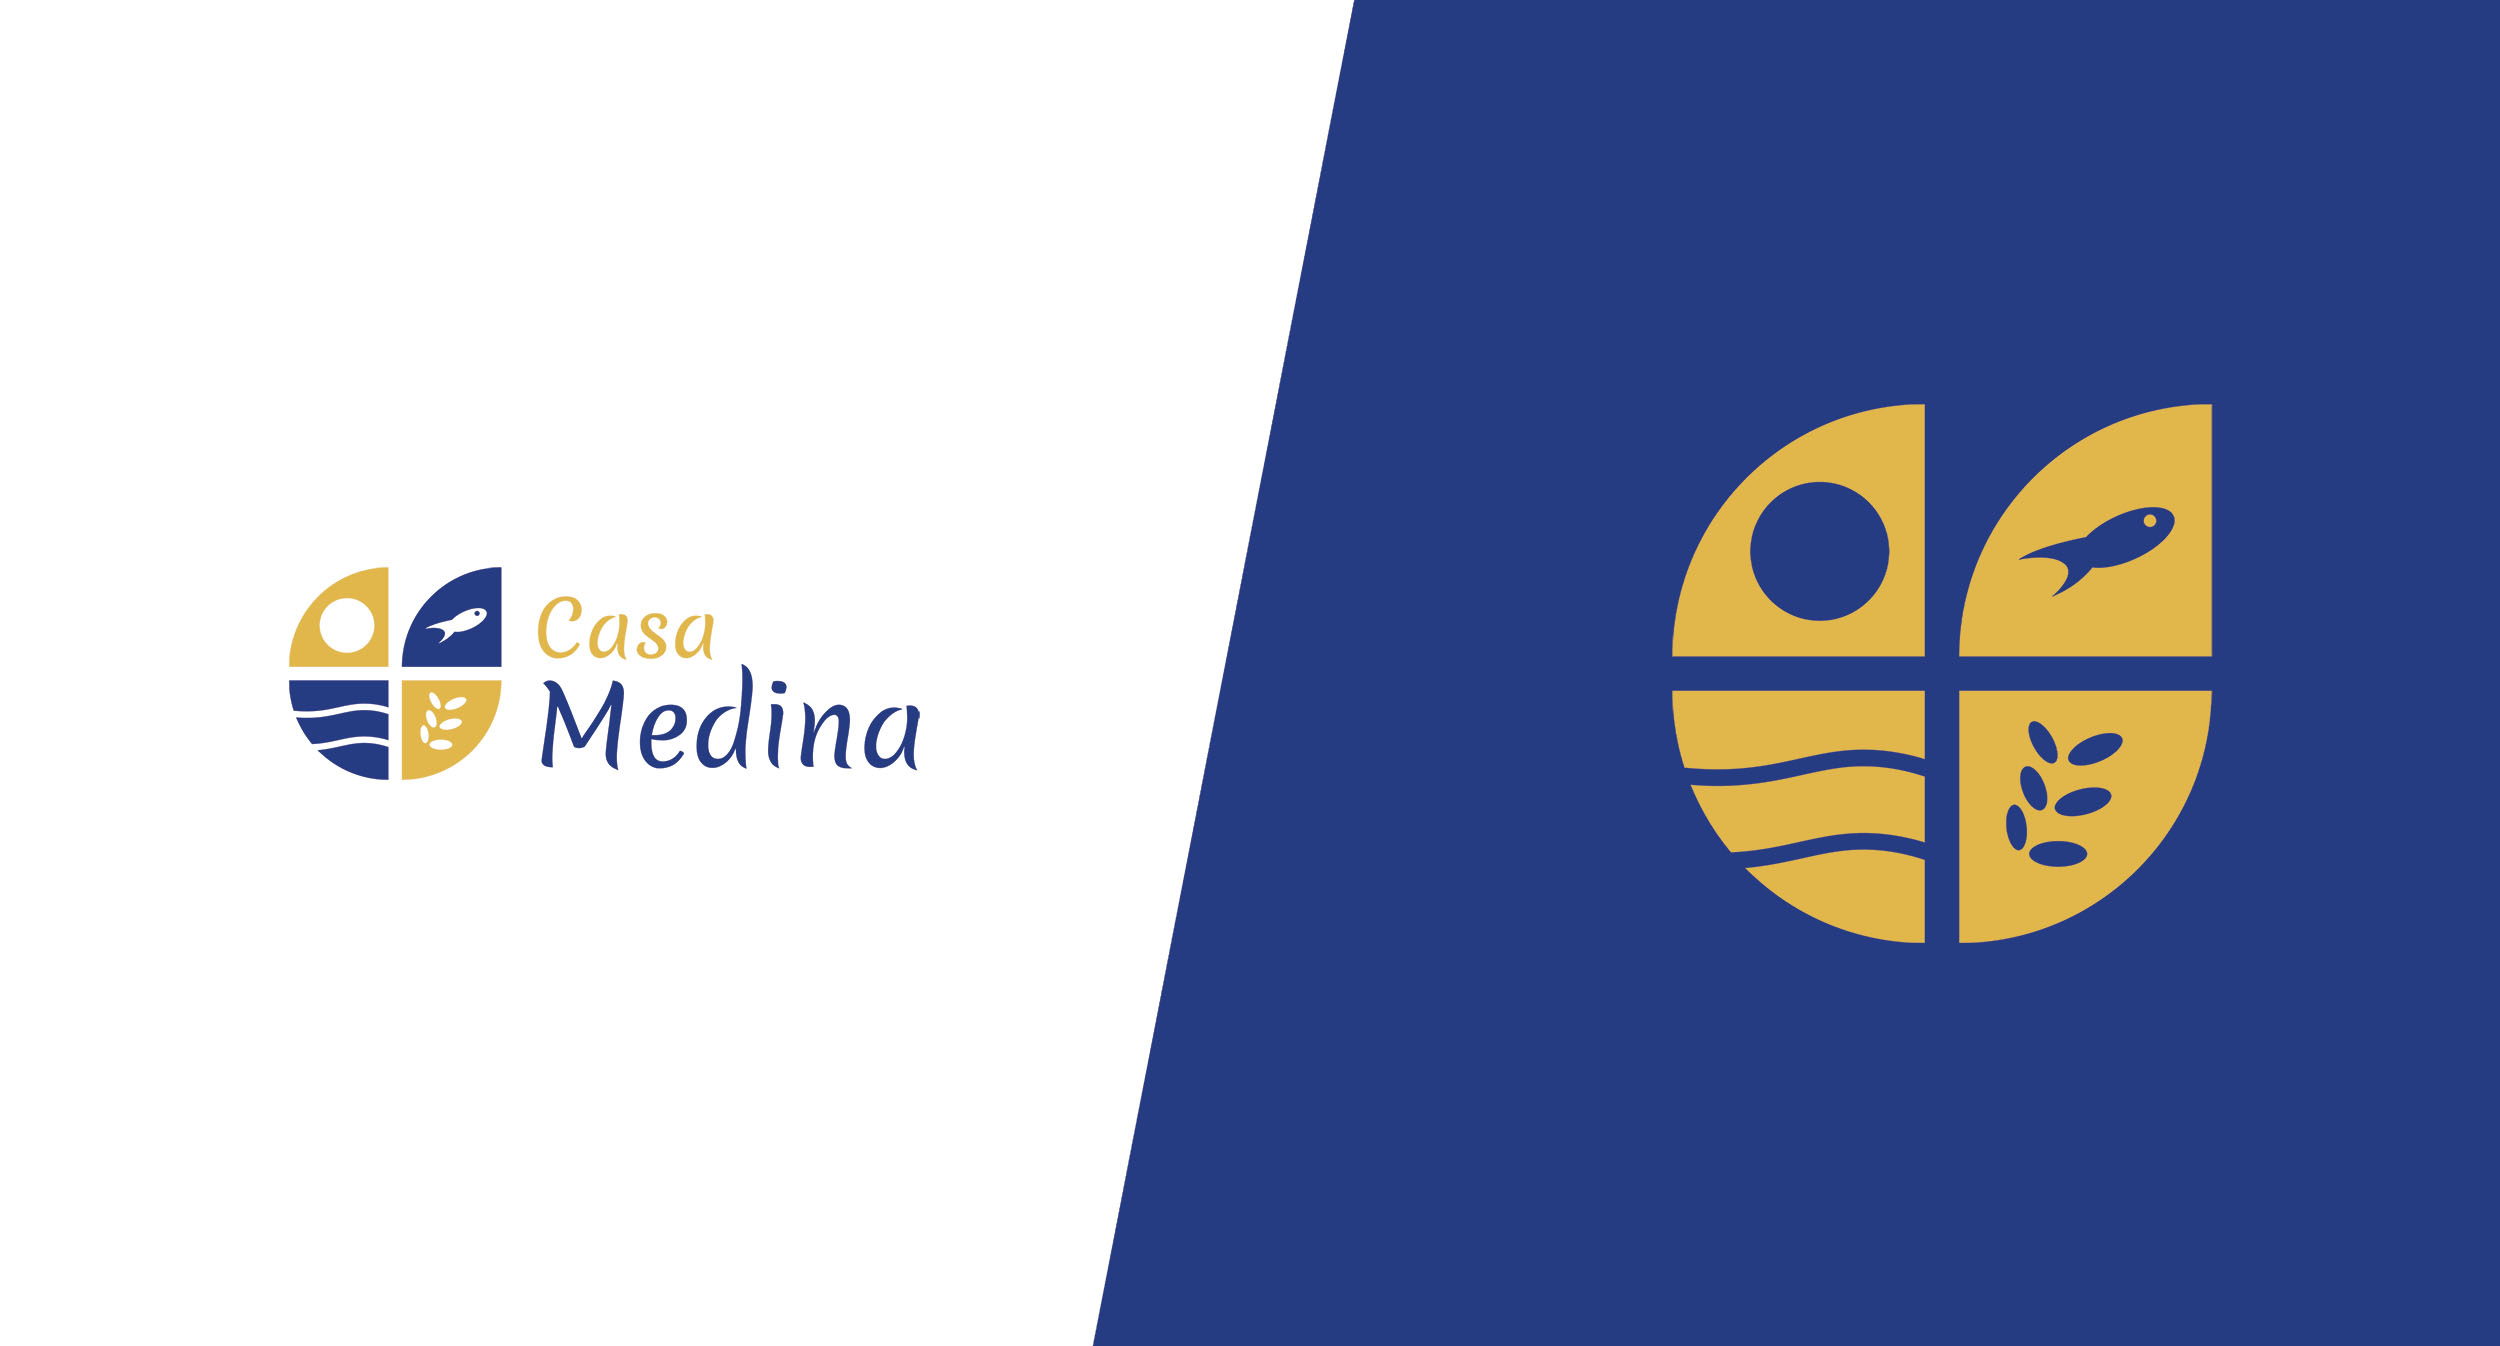 Het logo van Casa Medina ontworpen door Donkeys & Co.